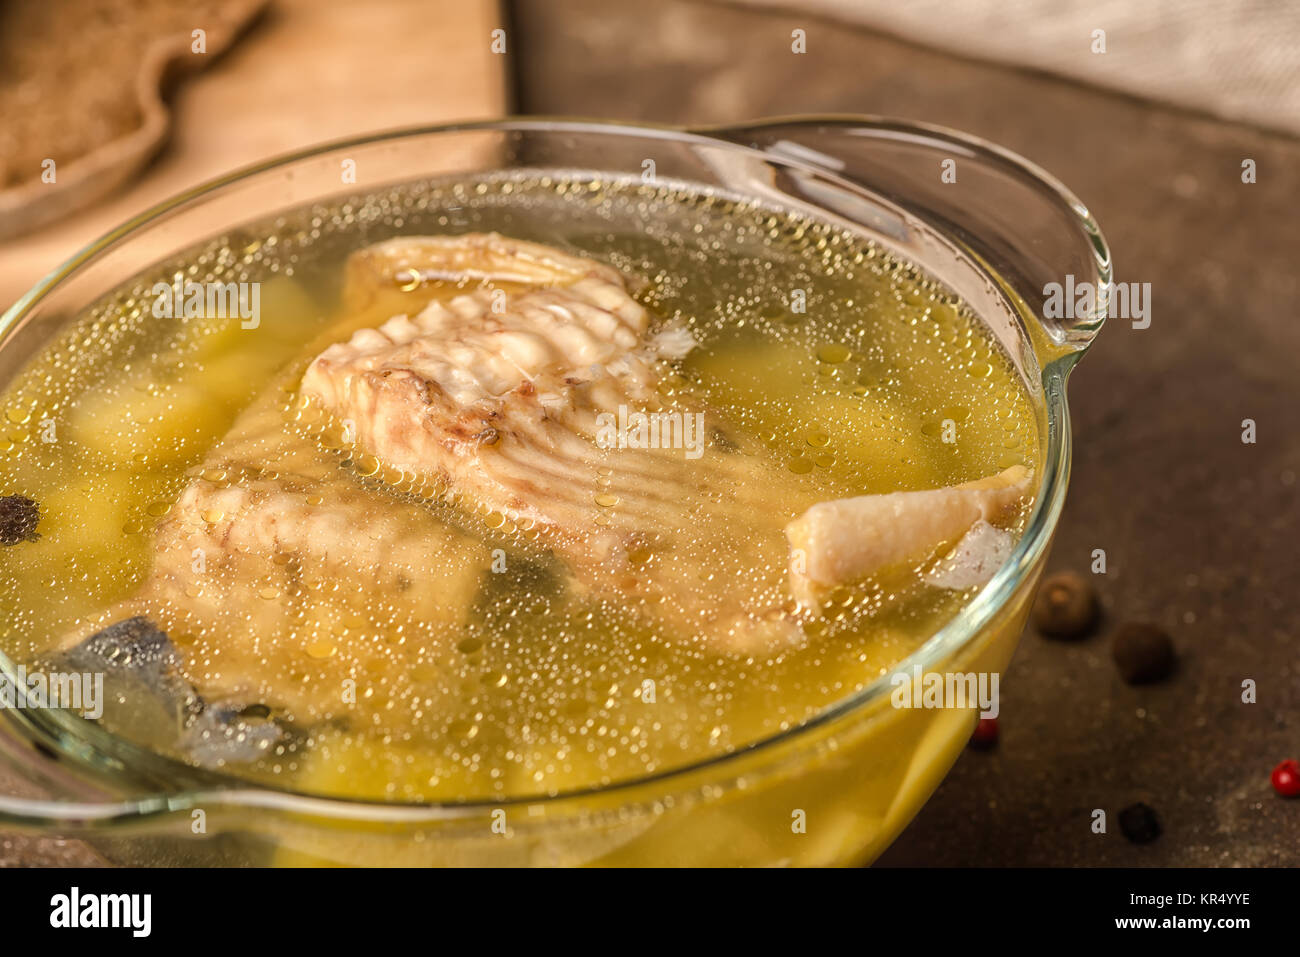 Di una zuppa di pesce fresco con lo storione, patate in lastra trasparente, decorate le spezie e il pane di segale su sfondo di pietra, mangiare sano, close up Foto Stock